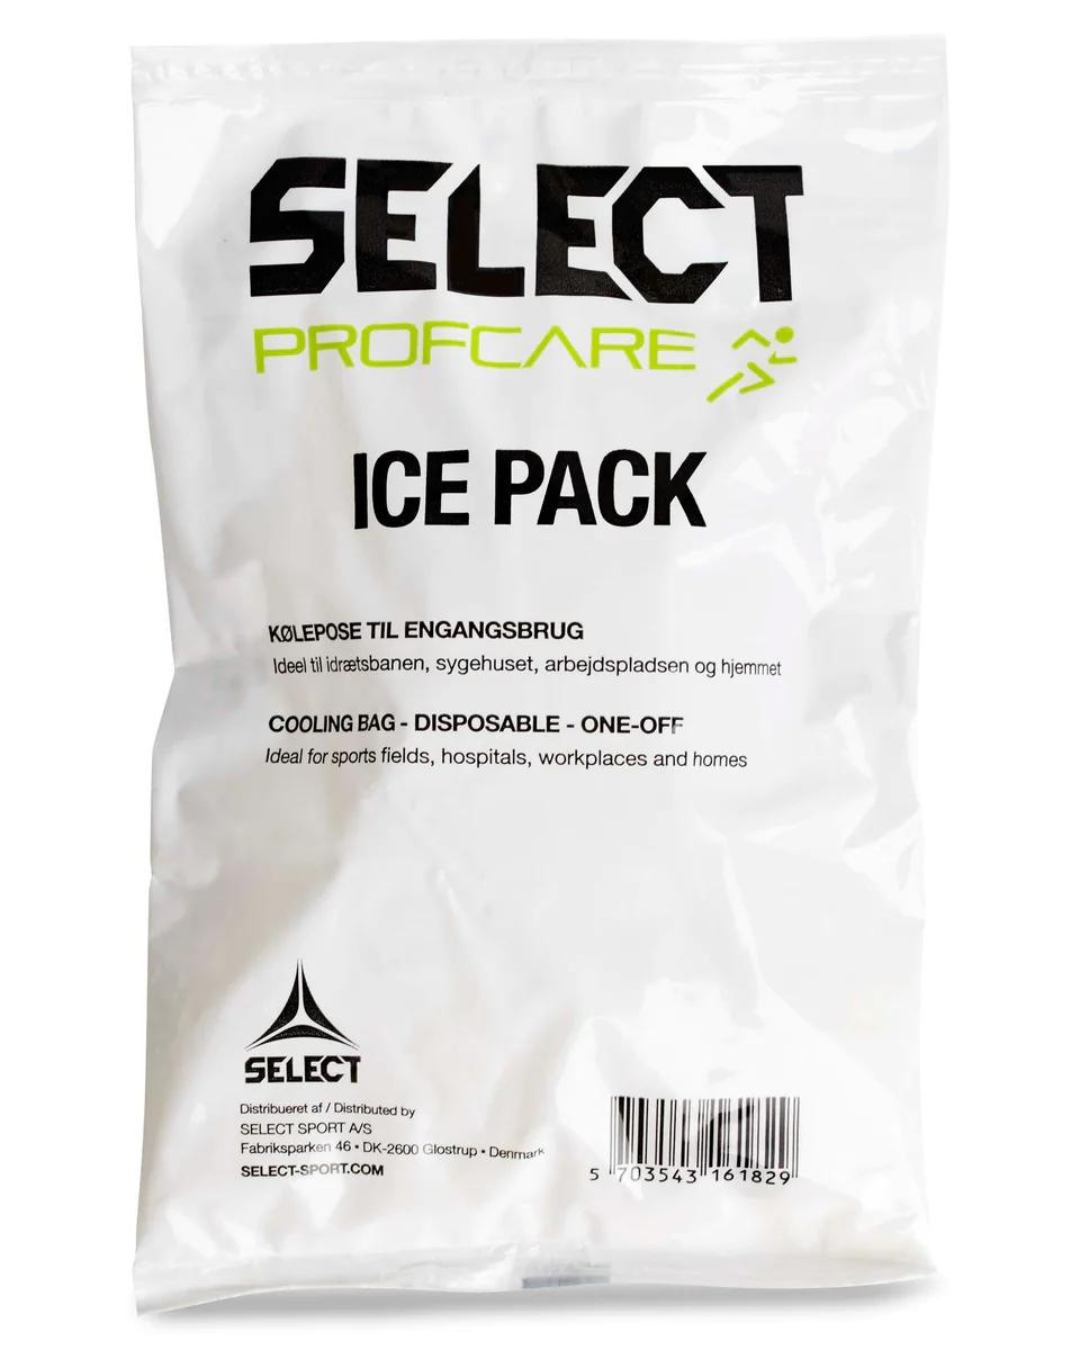 Select Procare Pack Engangsbrug